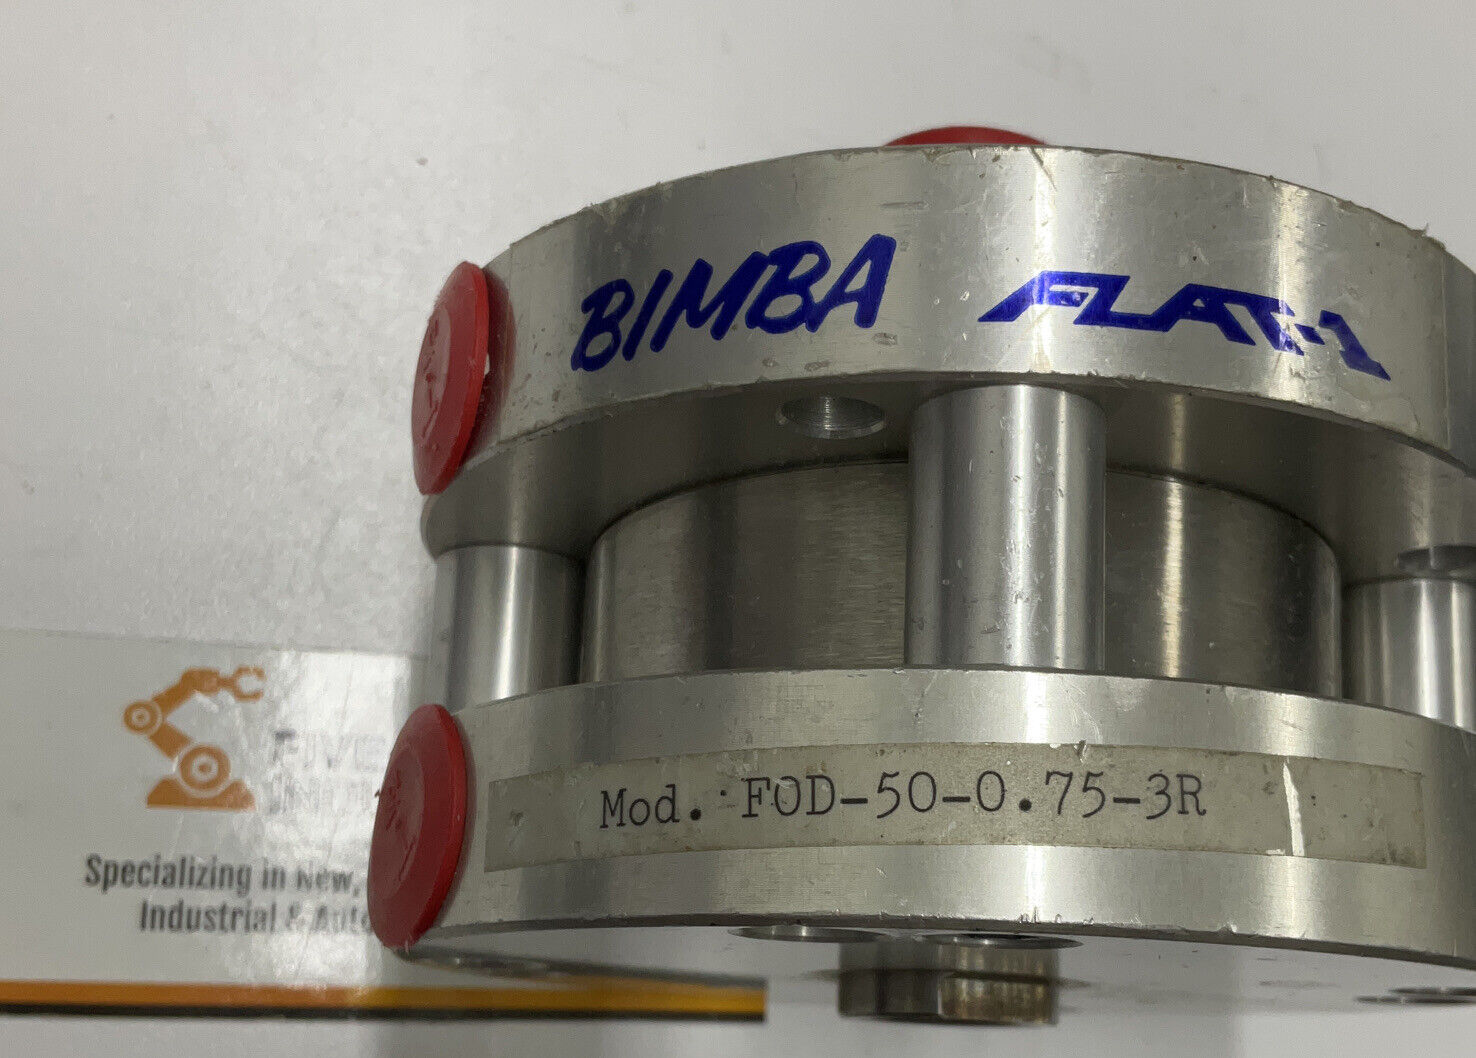 Bimba FOD-50-0.75-3R FLAT-1 Pneumatic Cylinder (CL216)